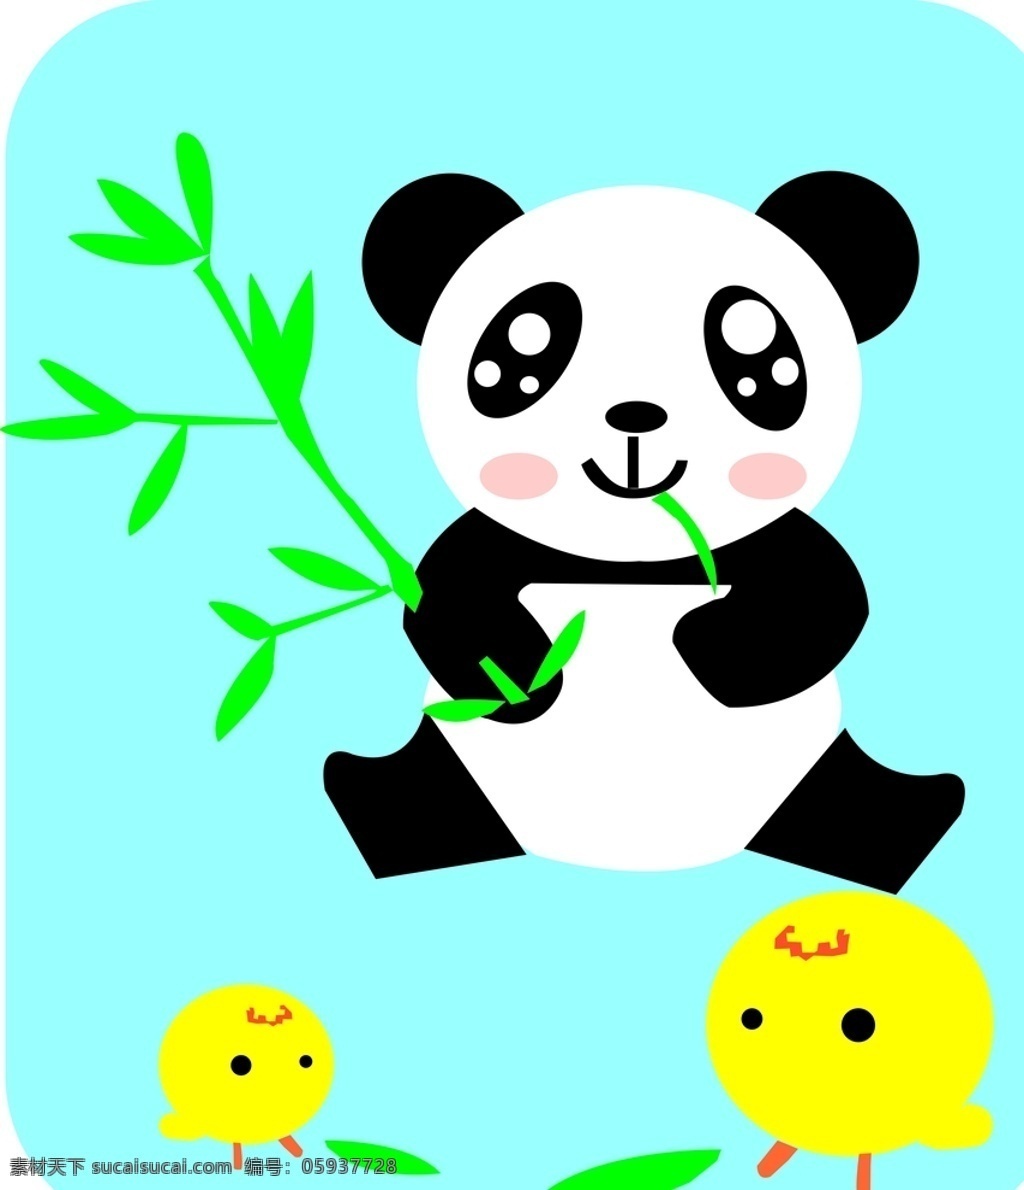 可爱的熊猫 吃竹叶的熊猫 笨重熊猫 聪明的熊猫 漂亮的熊猫 生物世界 野生动物